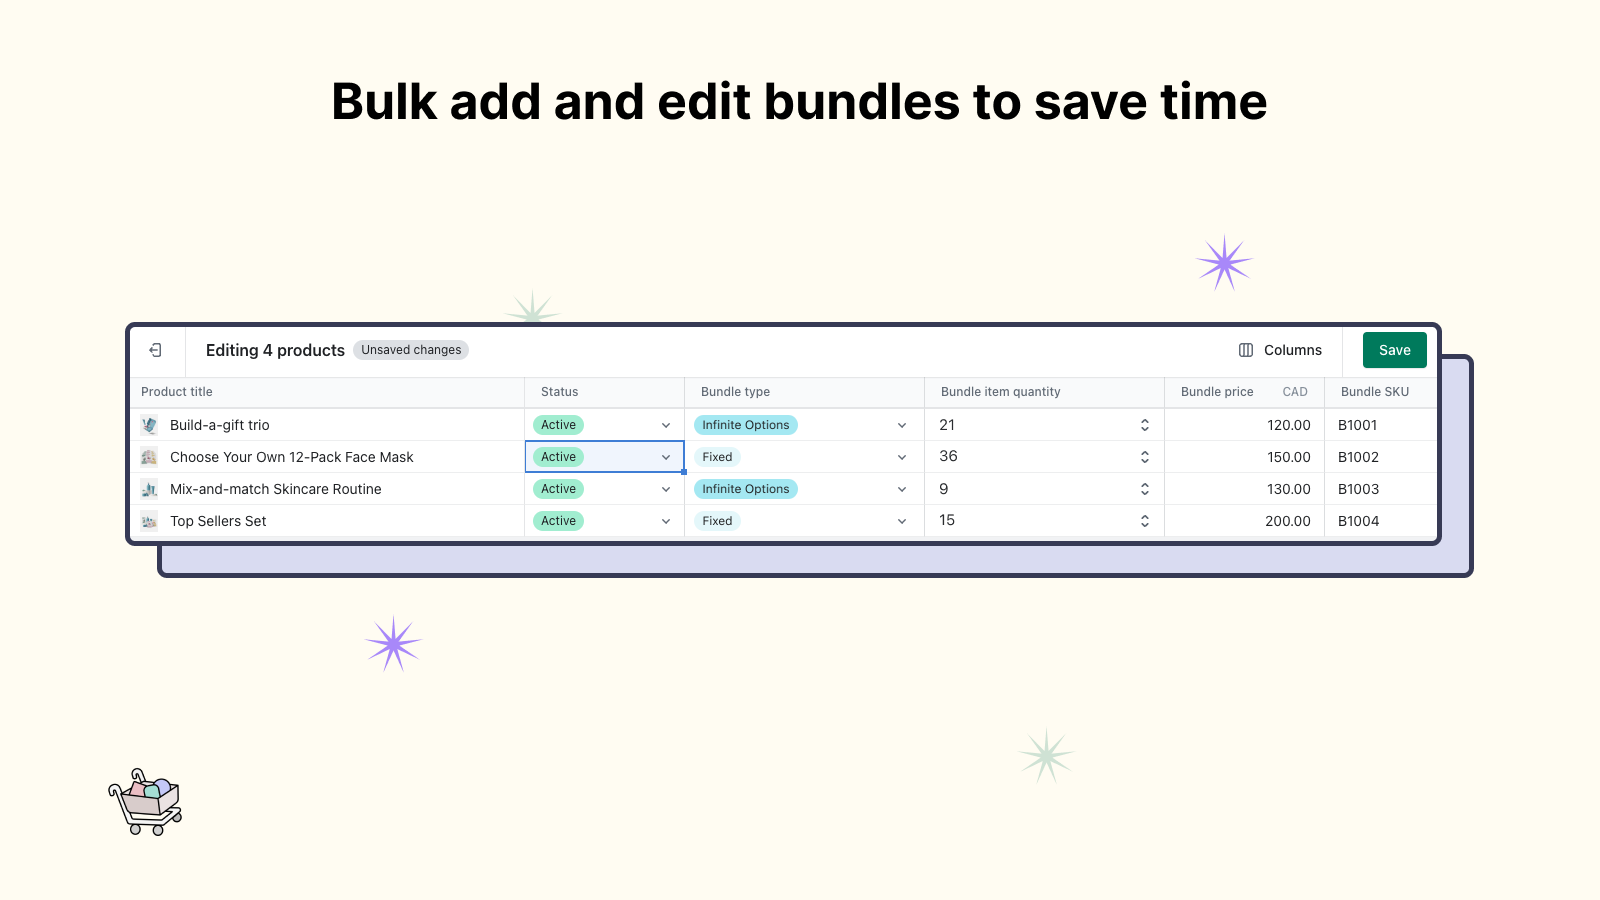 Añade y edita paquetes en masa para ahorrar tiempo